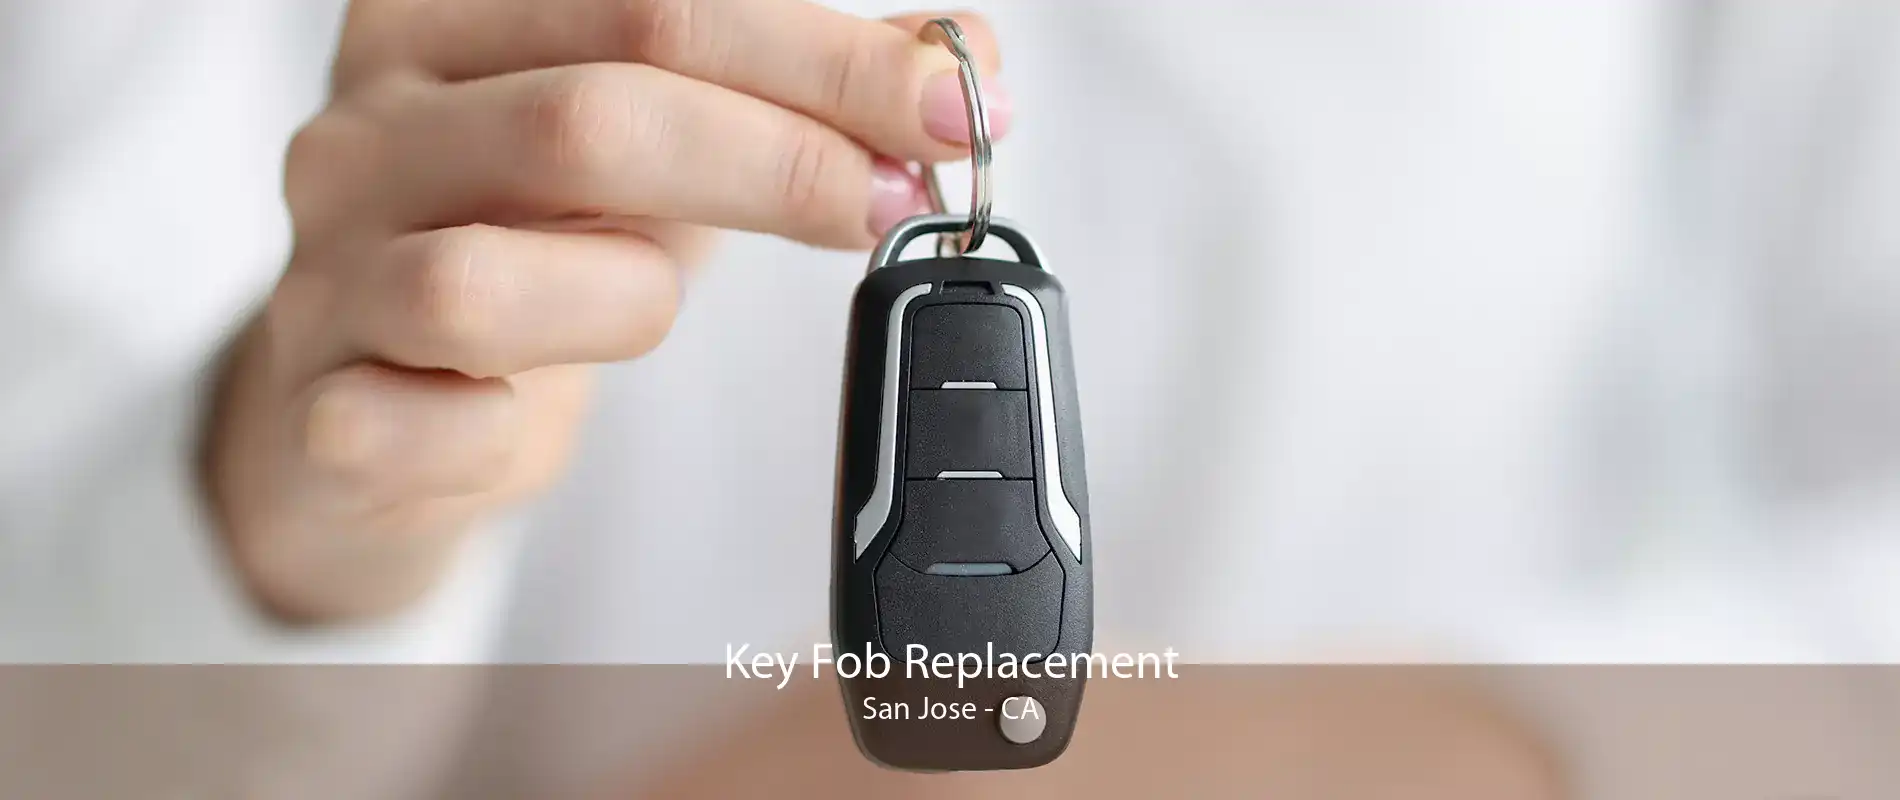 Key Fob Replacement San Jose - CA